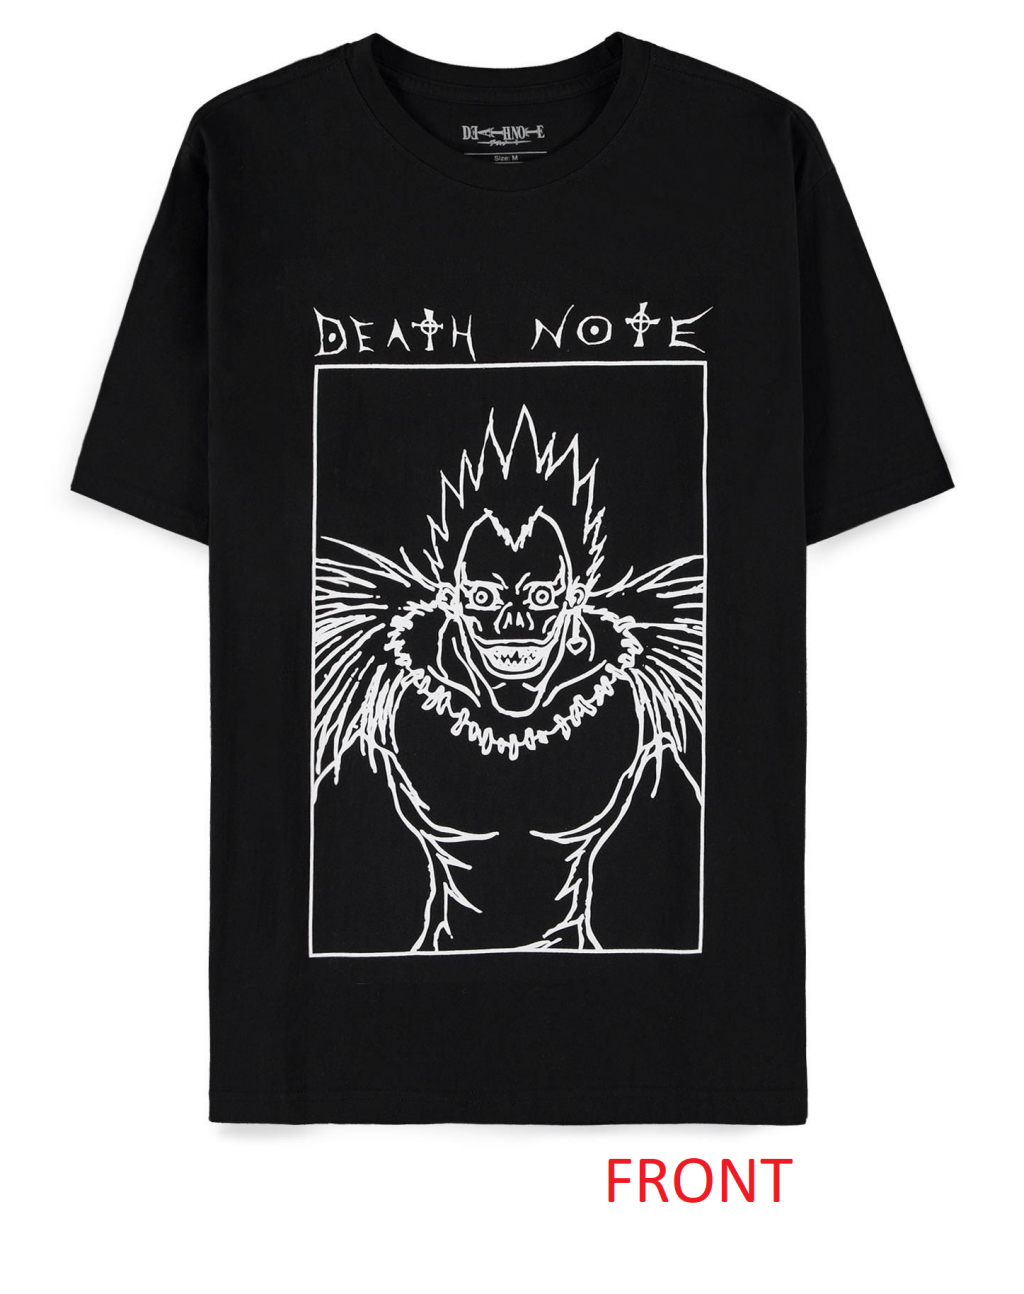 DEATH NOTE - Ryuk Square - Men's Black T-Shirt (S)